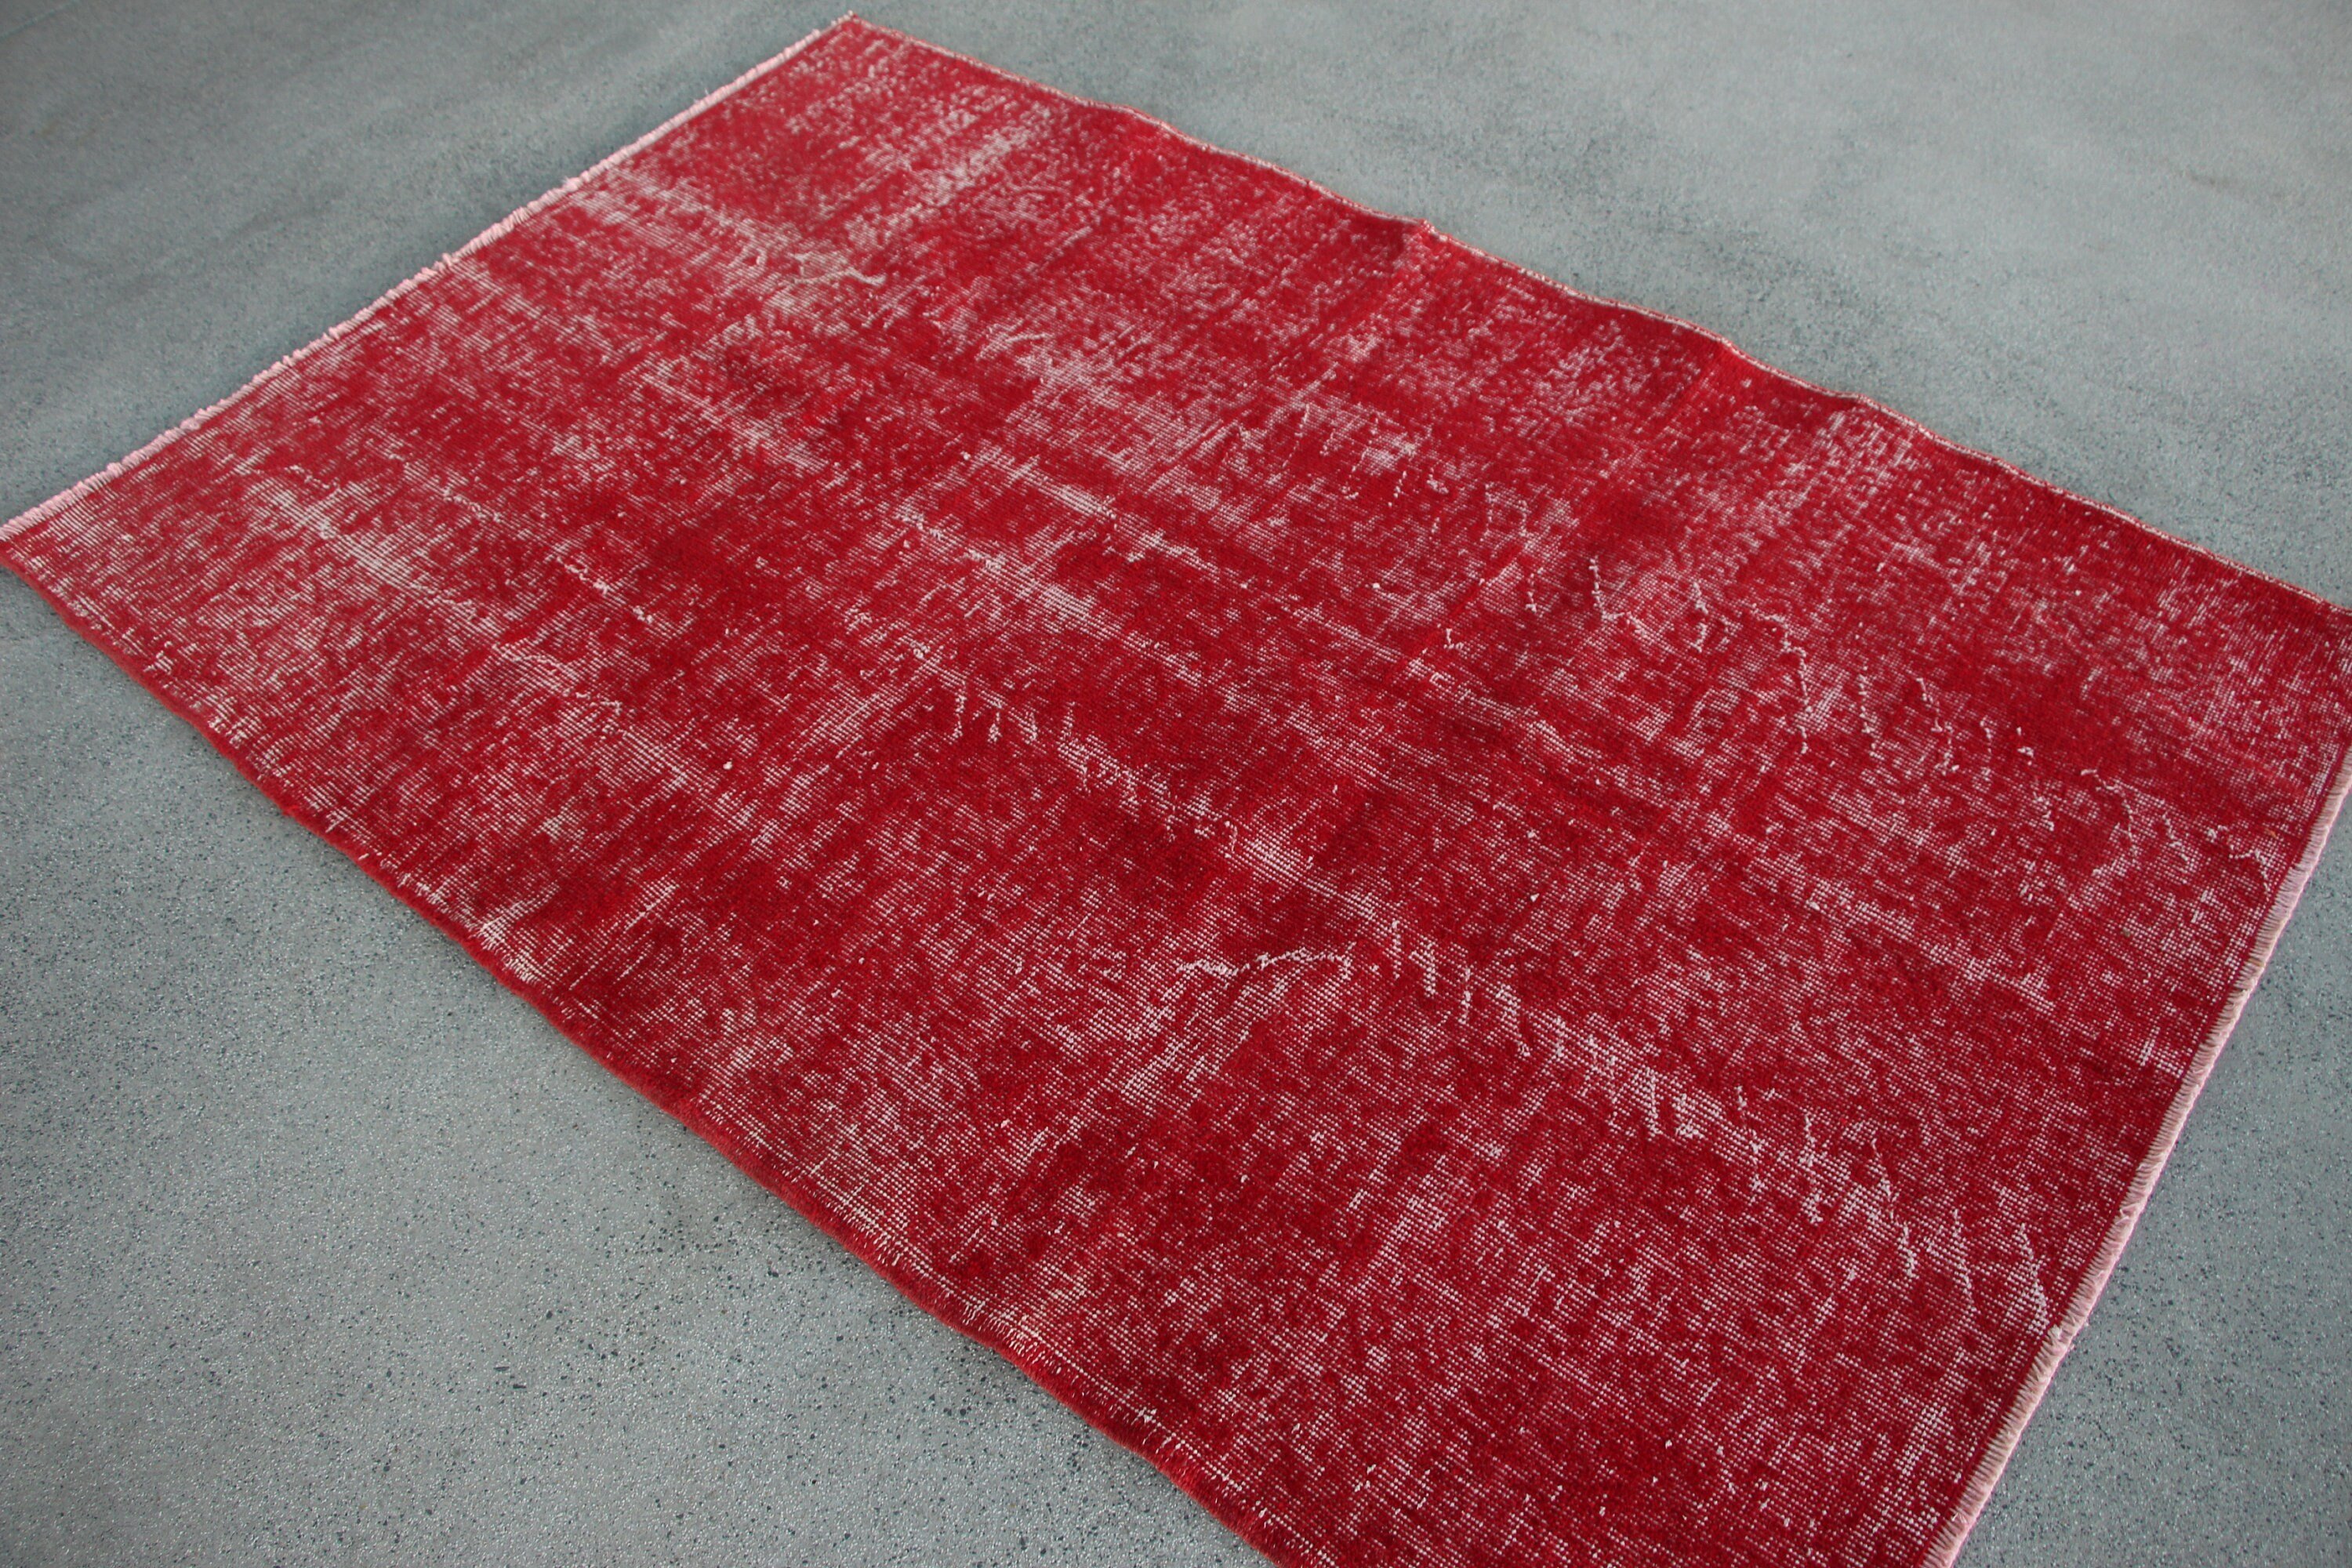 Red Oriental Rug, Wool Rugs, Turkish Rugs, Indoor Rugs, Dining Room Rug, Oriental Rugs, Rugs for Area, 4.1x6.4 ft Area Rugs, Vintage Rug